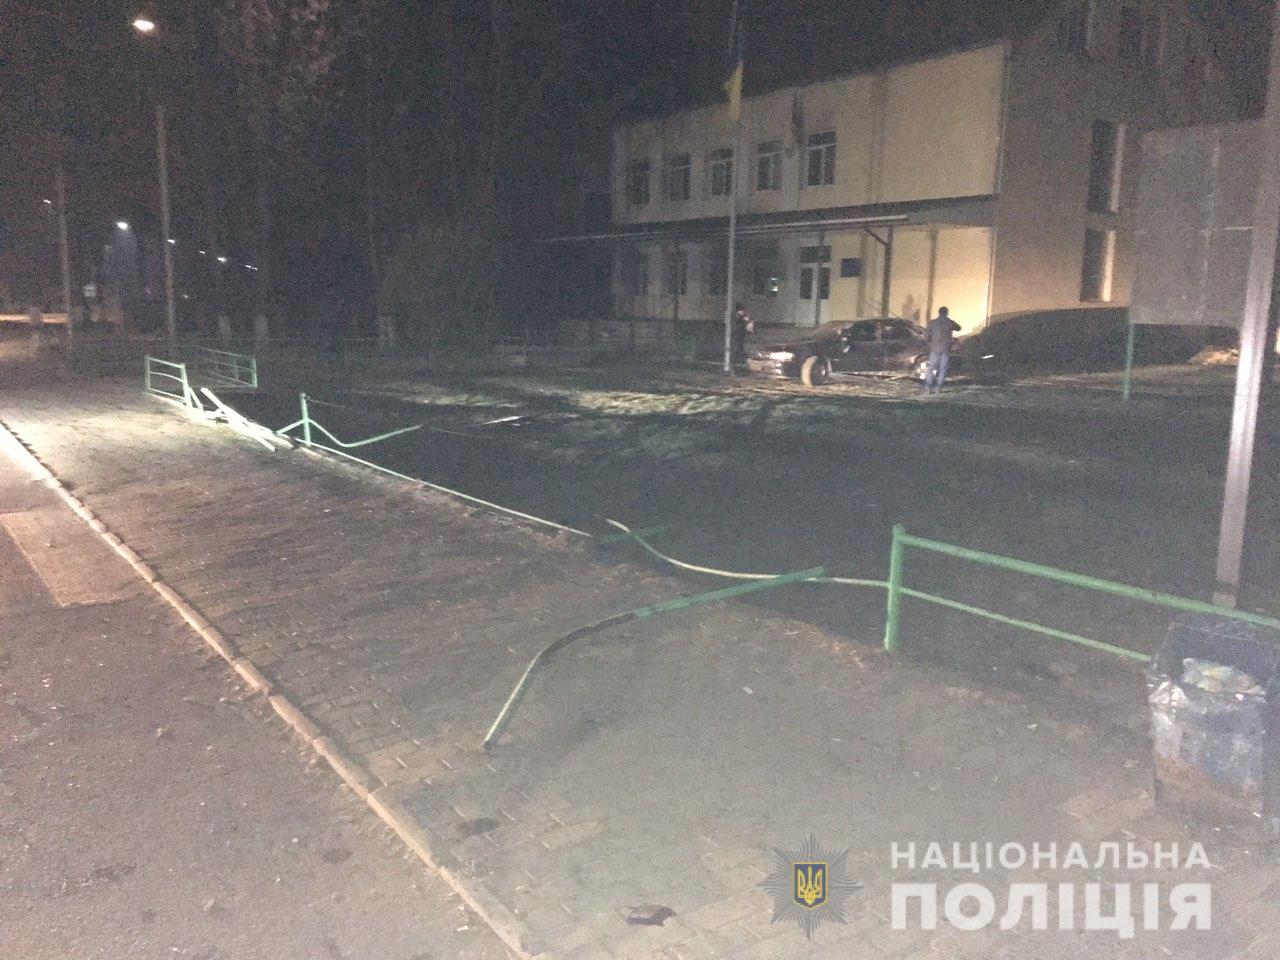 30 листопада, після 21:00, правоохоронці Свалявщини отримали повідомлення про ДТП в селі Поляна. На місце події одразу виїхали працівники групи реагування патрульної поліції.